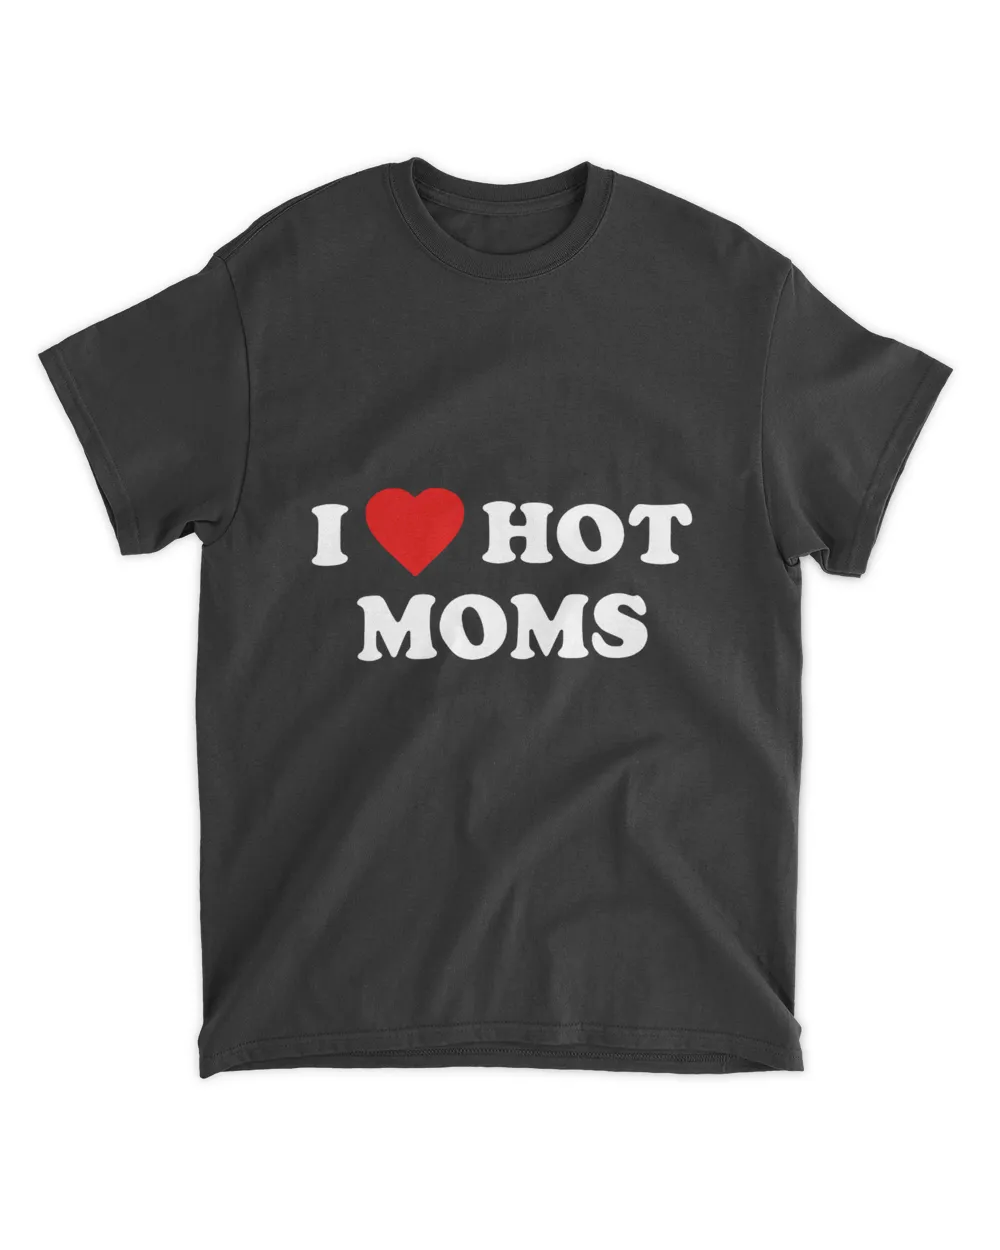 I Love Hot Moms And I Heart Hot Moms Virginity Tee